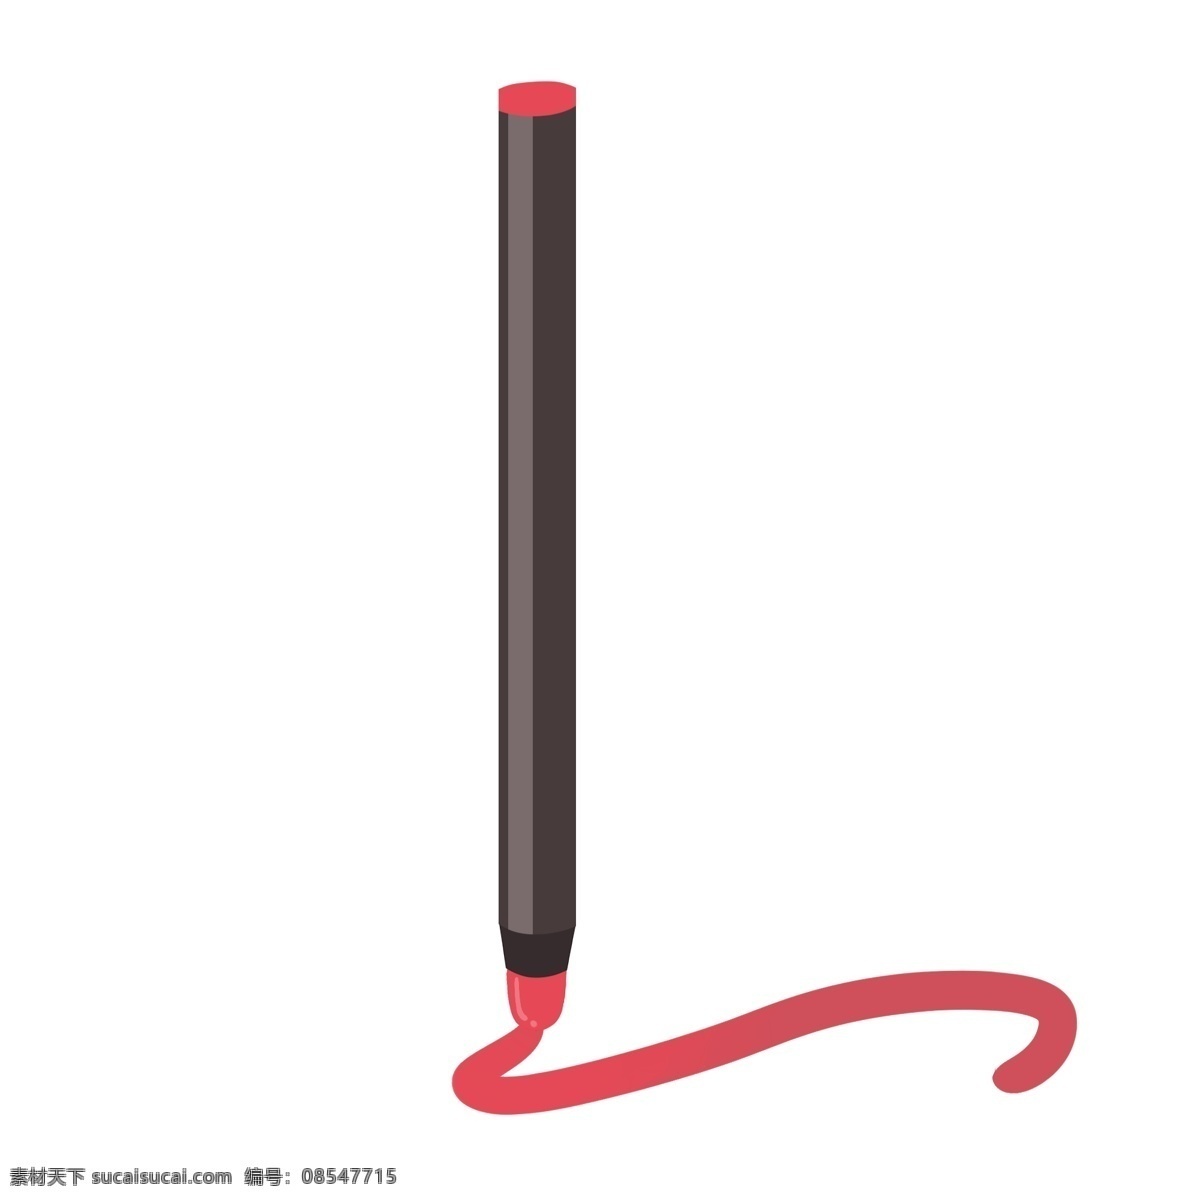 黑色 卡通 画笔 插画 黑色的画笔 精美的画笔 绘画用笔 卡通文具插画 创意文具 红色彩笔 画笔插画